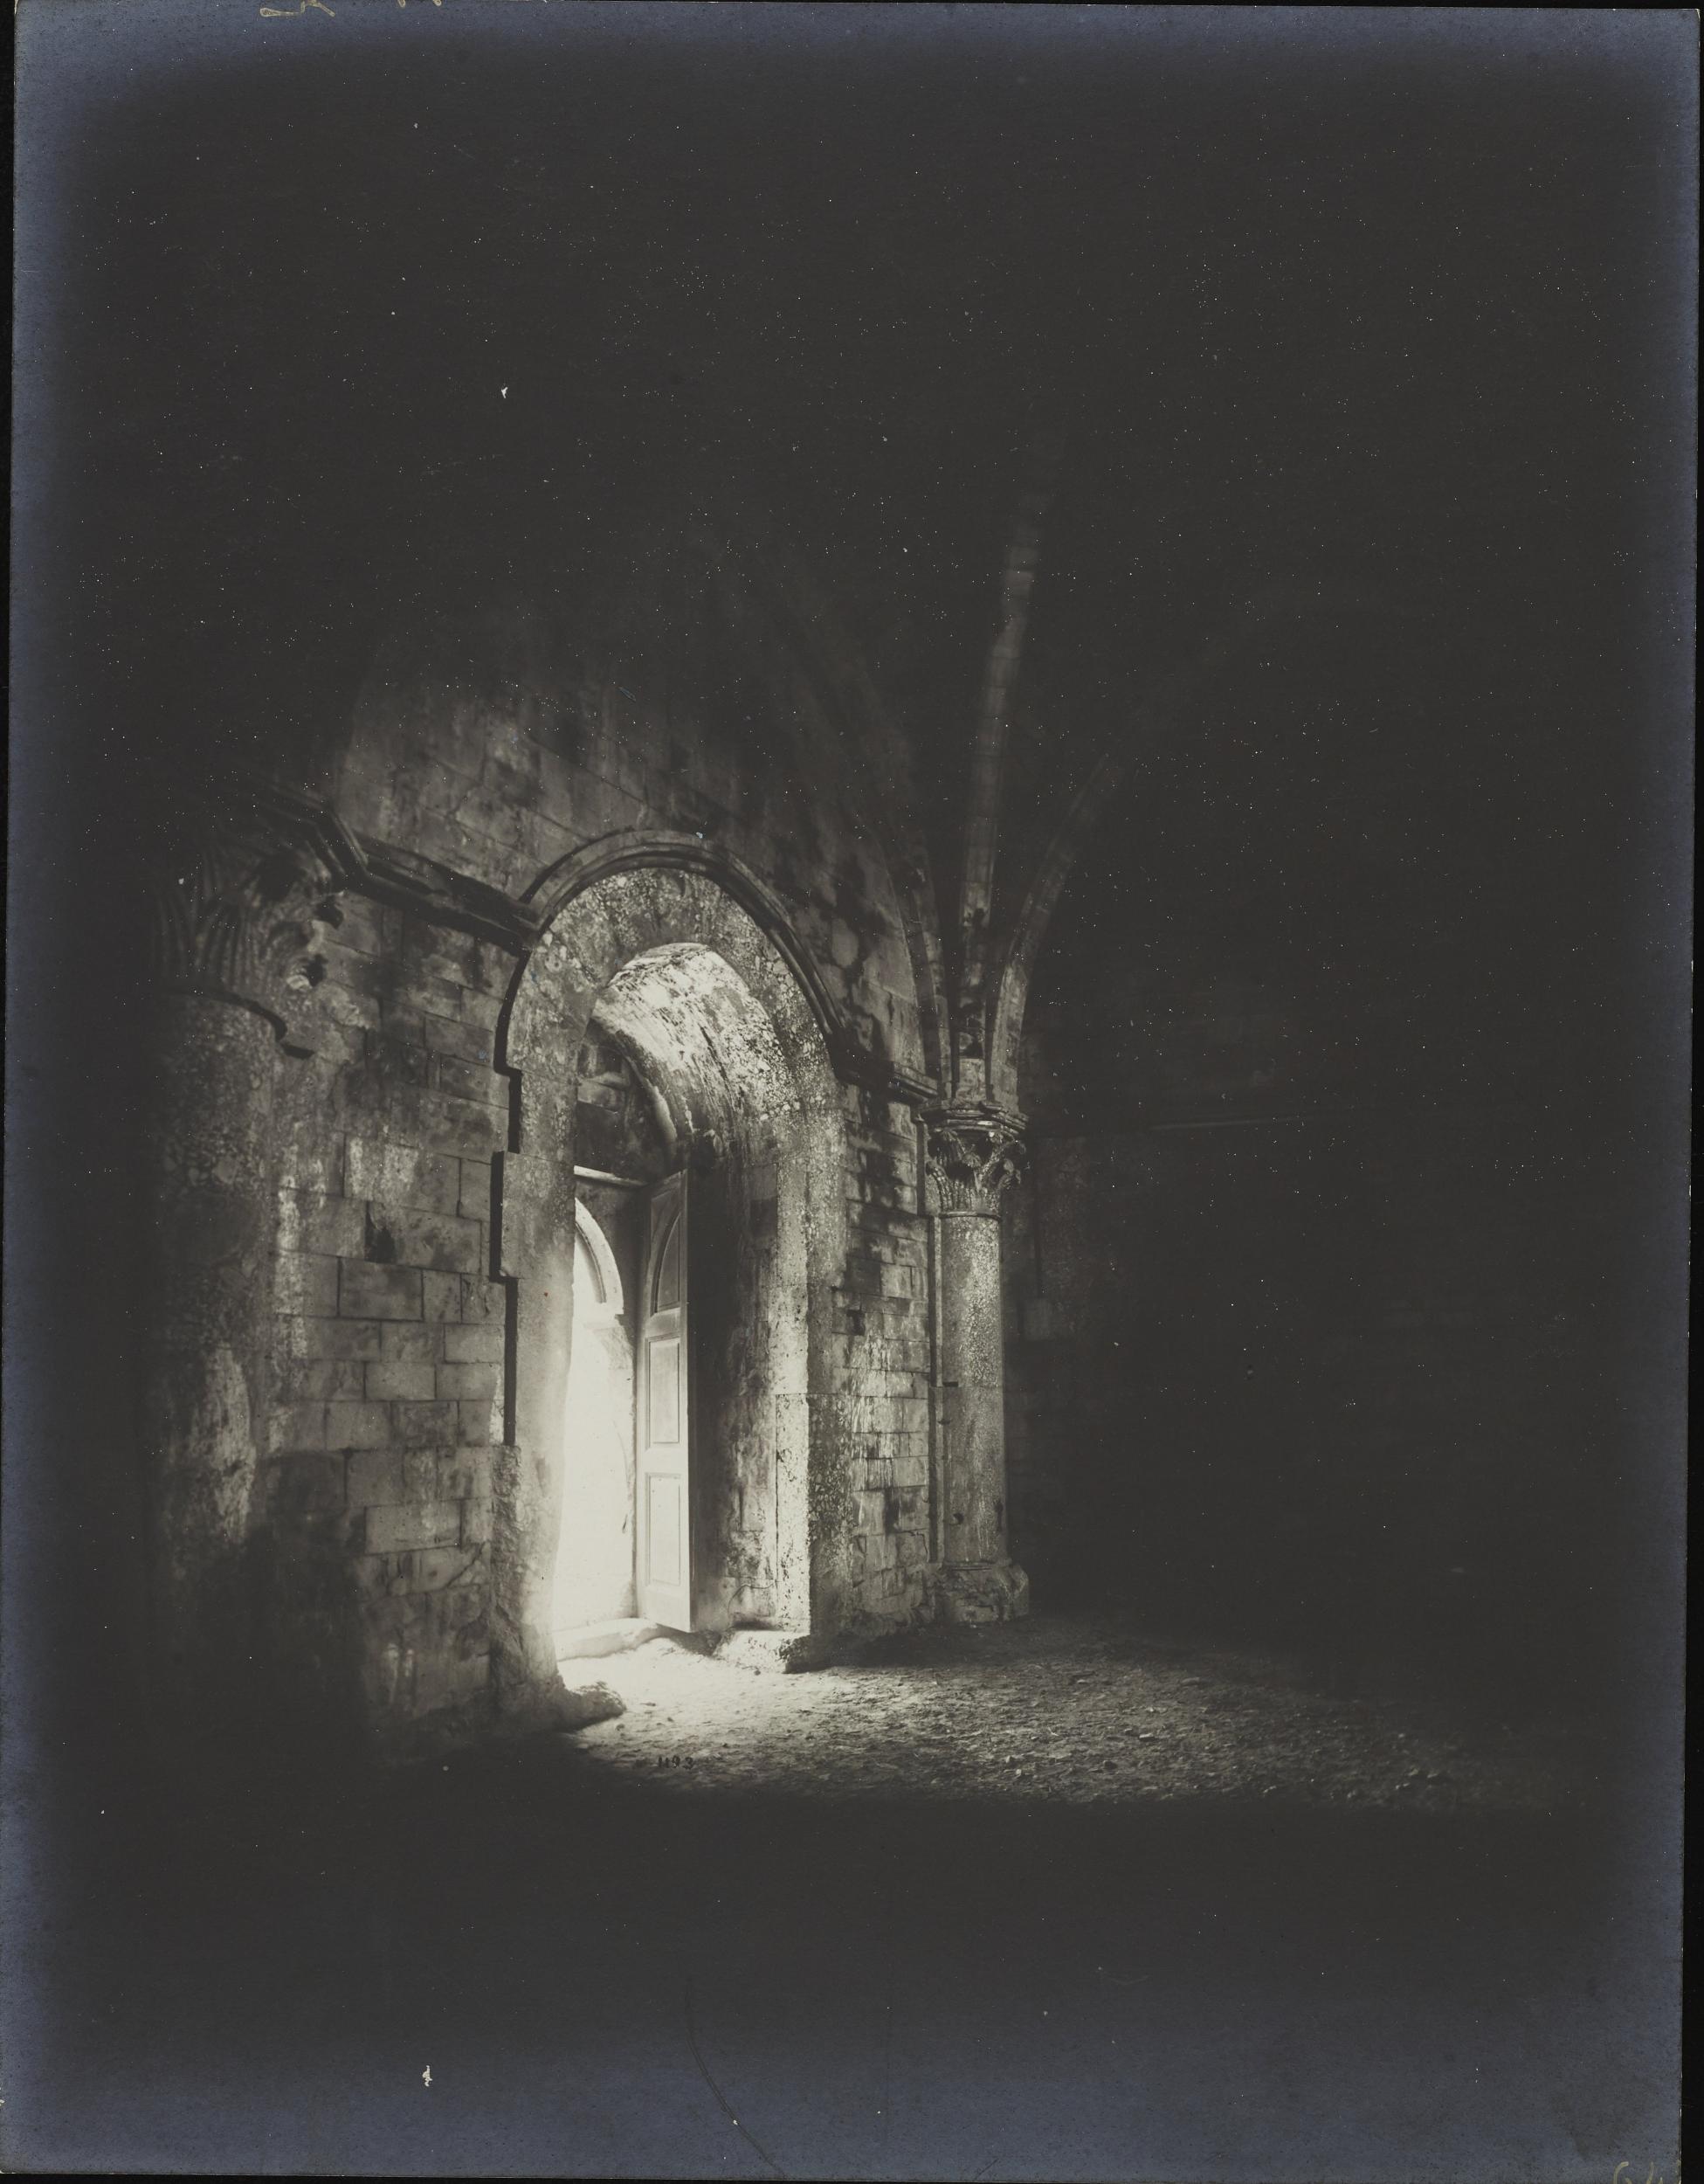 Fotografo non identificato, Andria, Castel del Monte - Sala, porta, 1951-2000, gelatina ai sali d'argento/carta, MPI6016735